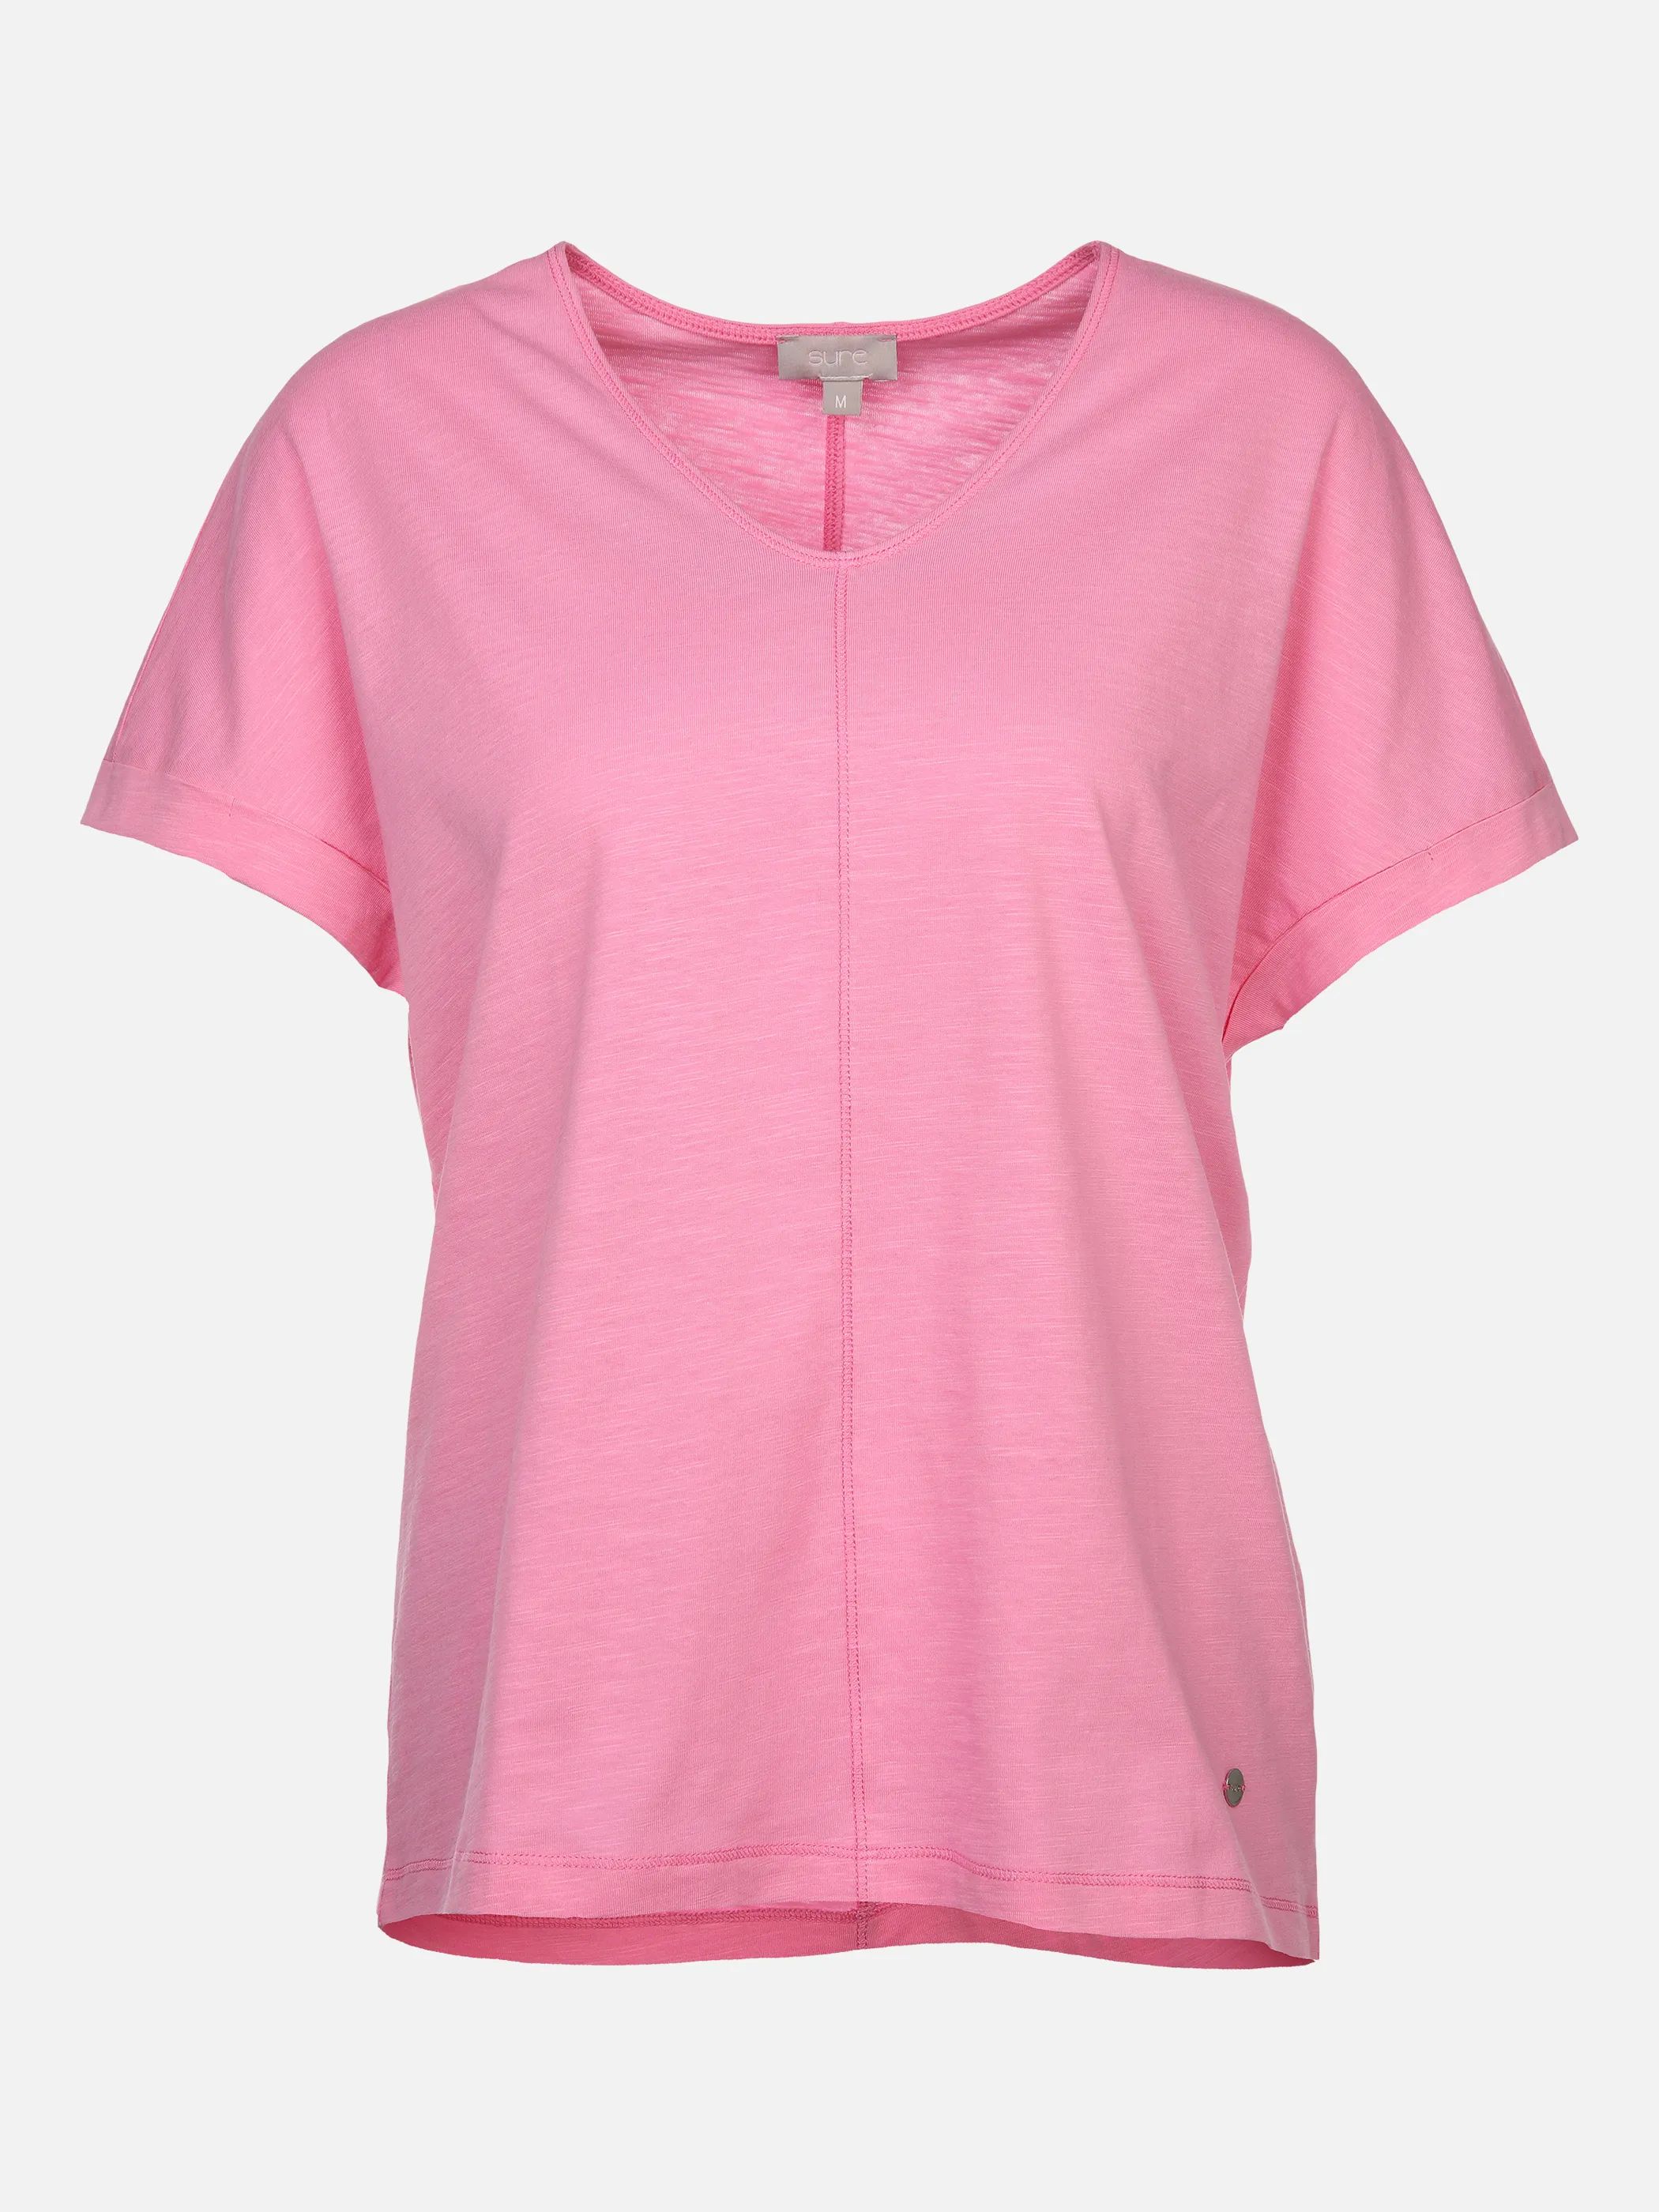 Sure Da-Shirt m.übergroßer Schulter Pink 873373 FLAMINGO 1